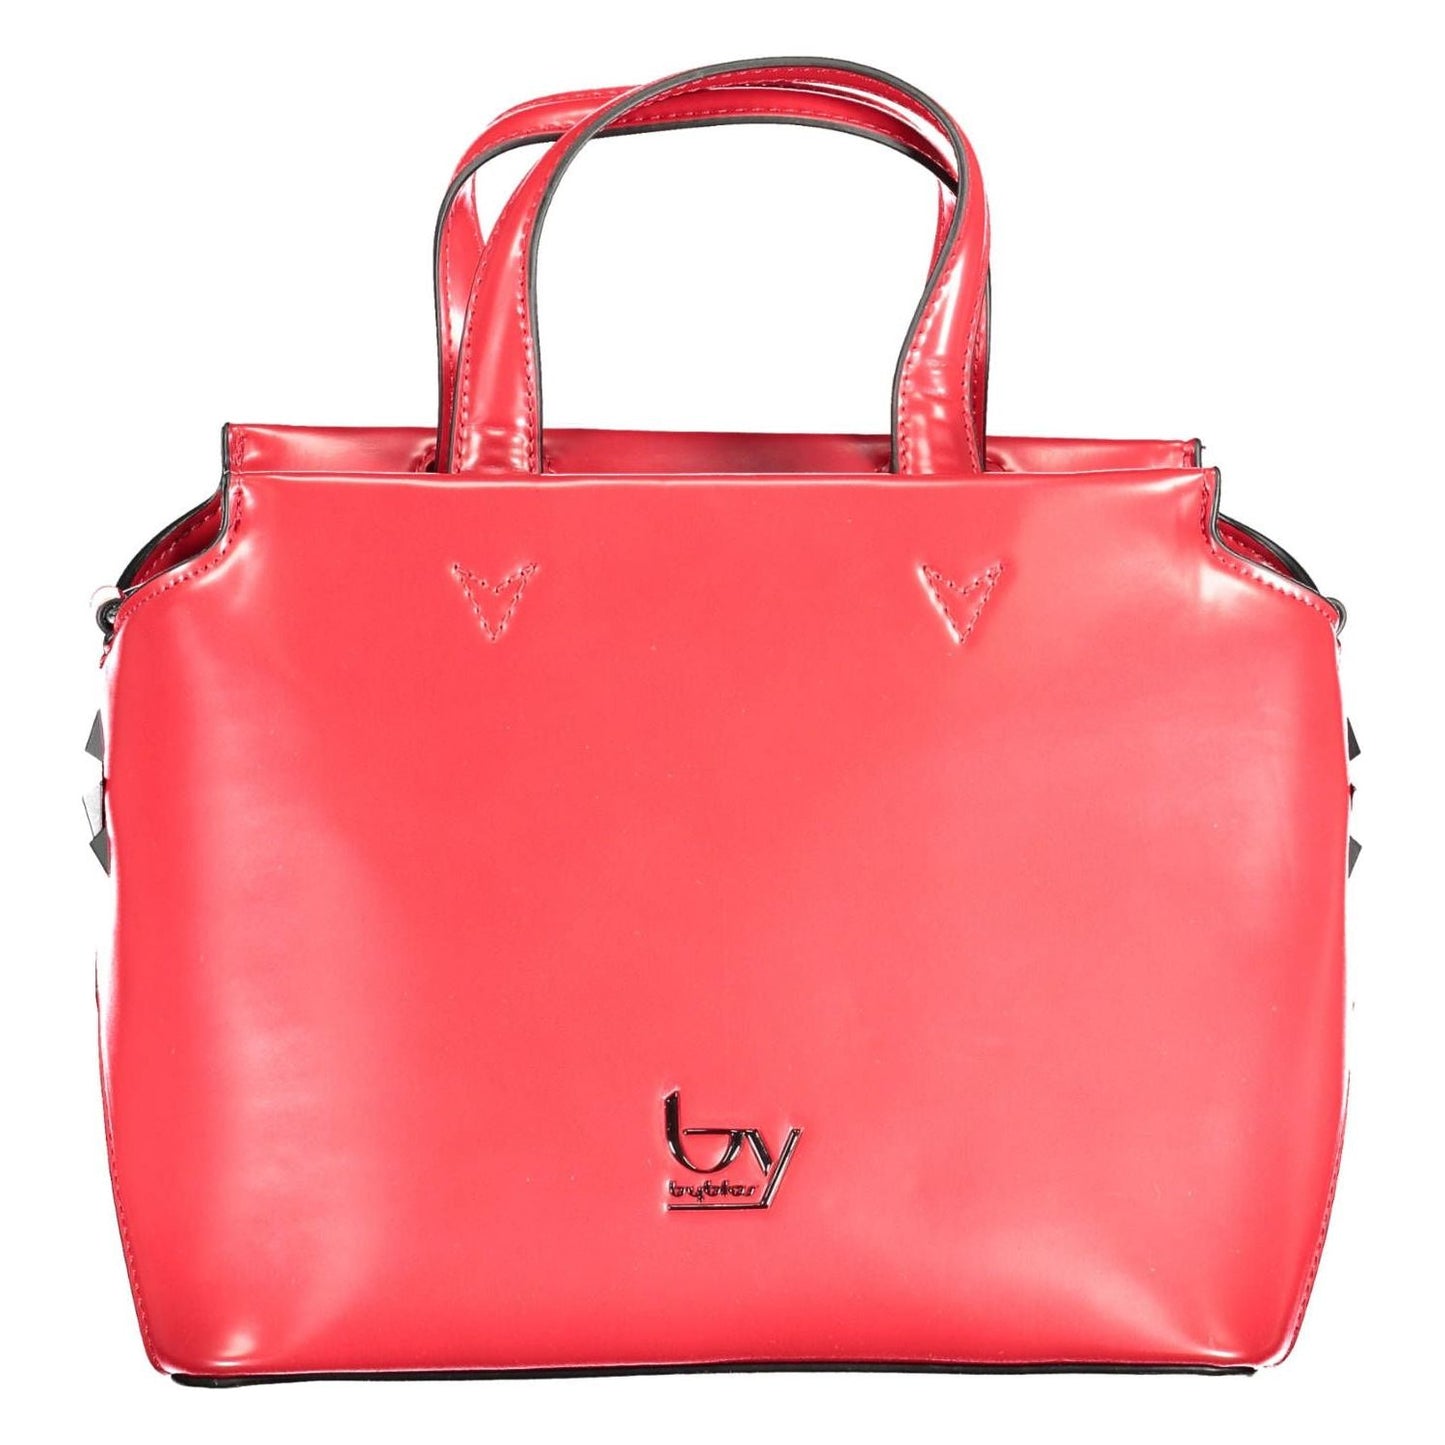 BYBLOS Elegant Red Satchel with Contrasting Details elegant-red-satchel-with-contrasting-details